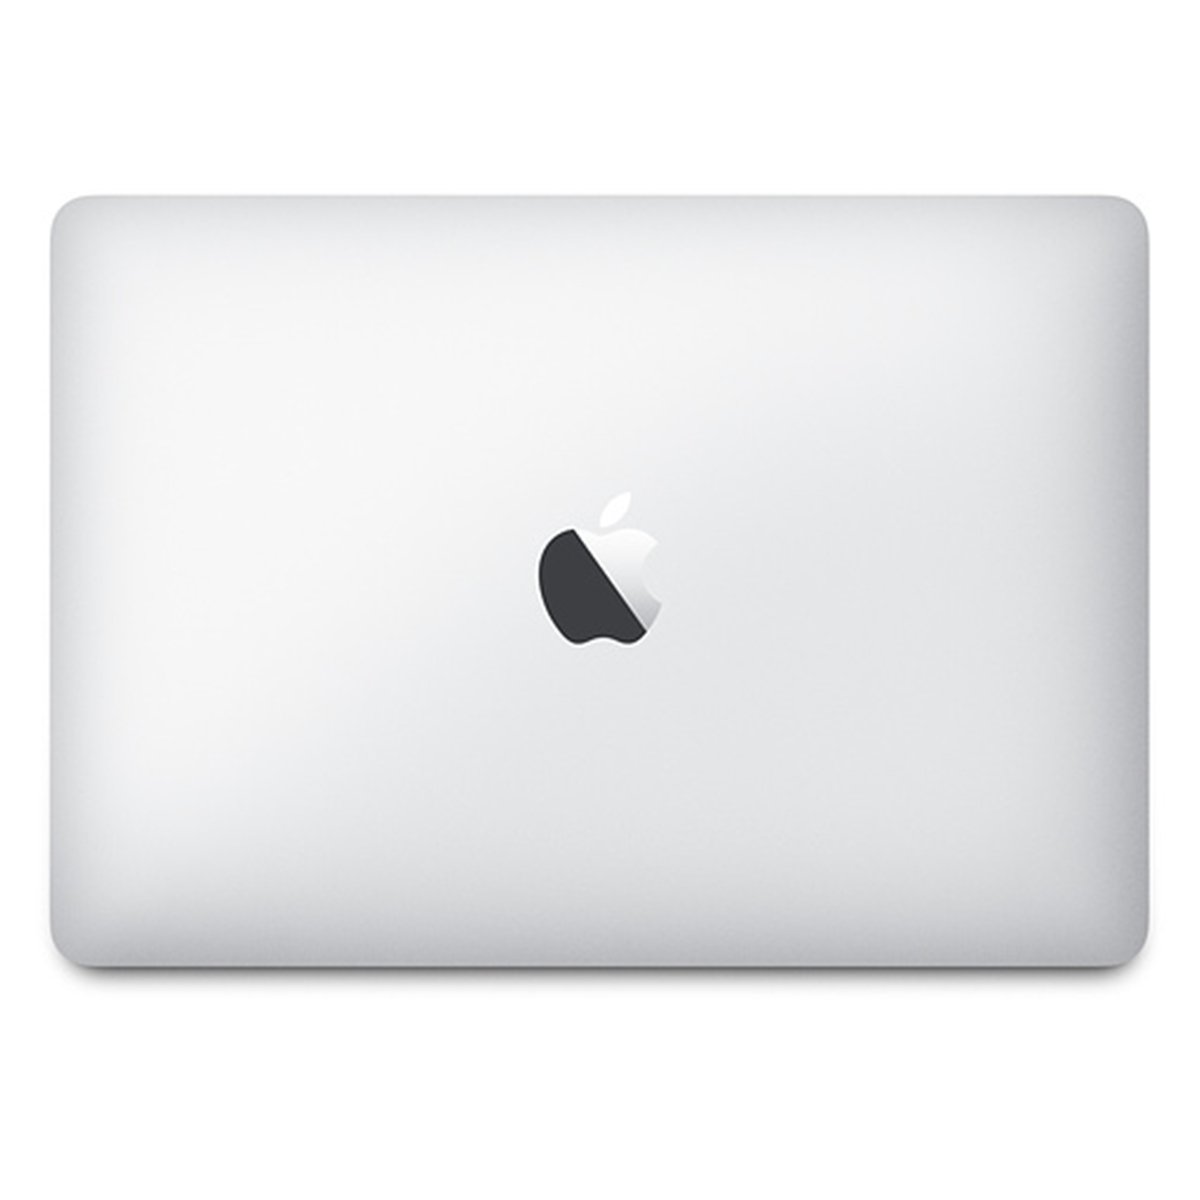 Apple Laptop 12 inches LED Laptop Silver (MNYJ2ZS/A) - Intel i5 1.3 GHz, 8 GB RAM, 512 GB Hybrid (HDD/SDD), English Keyboard